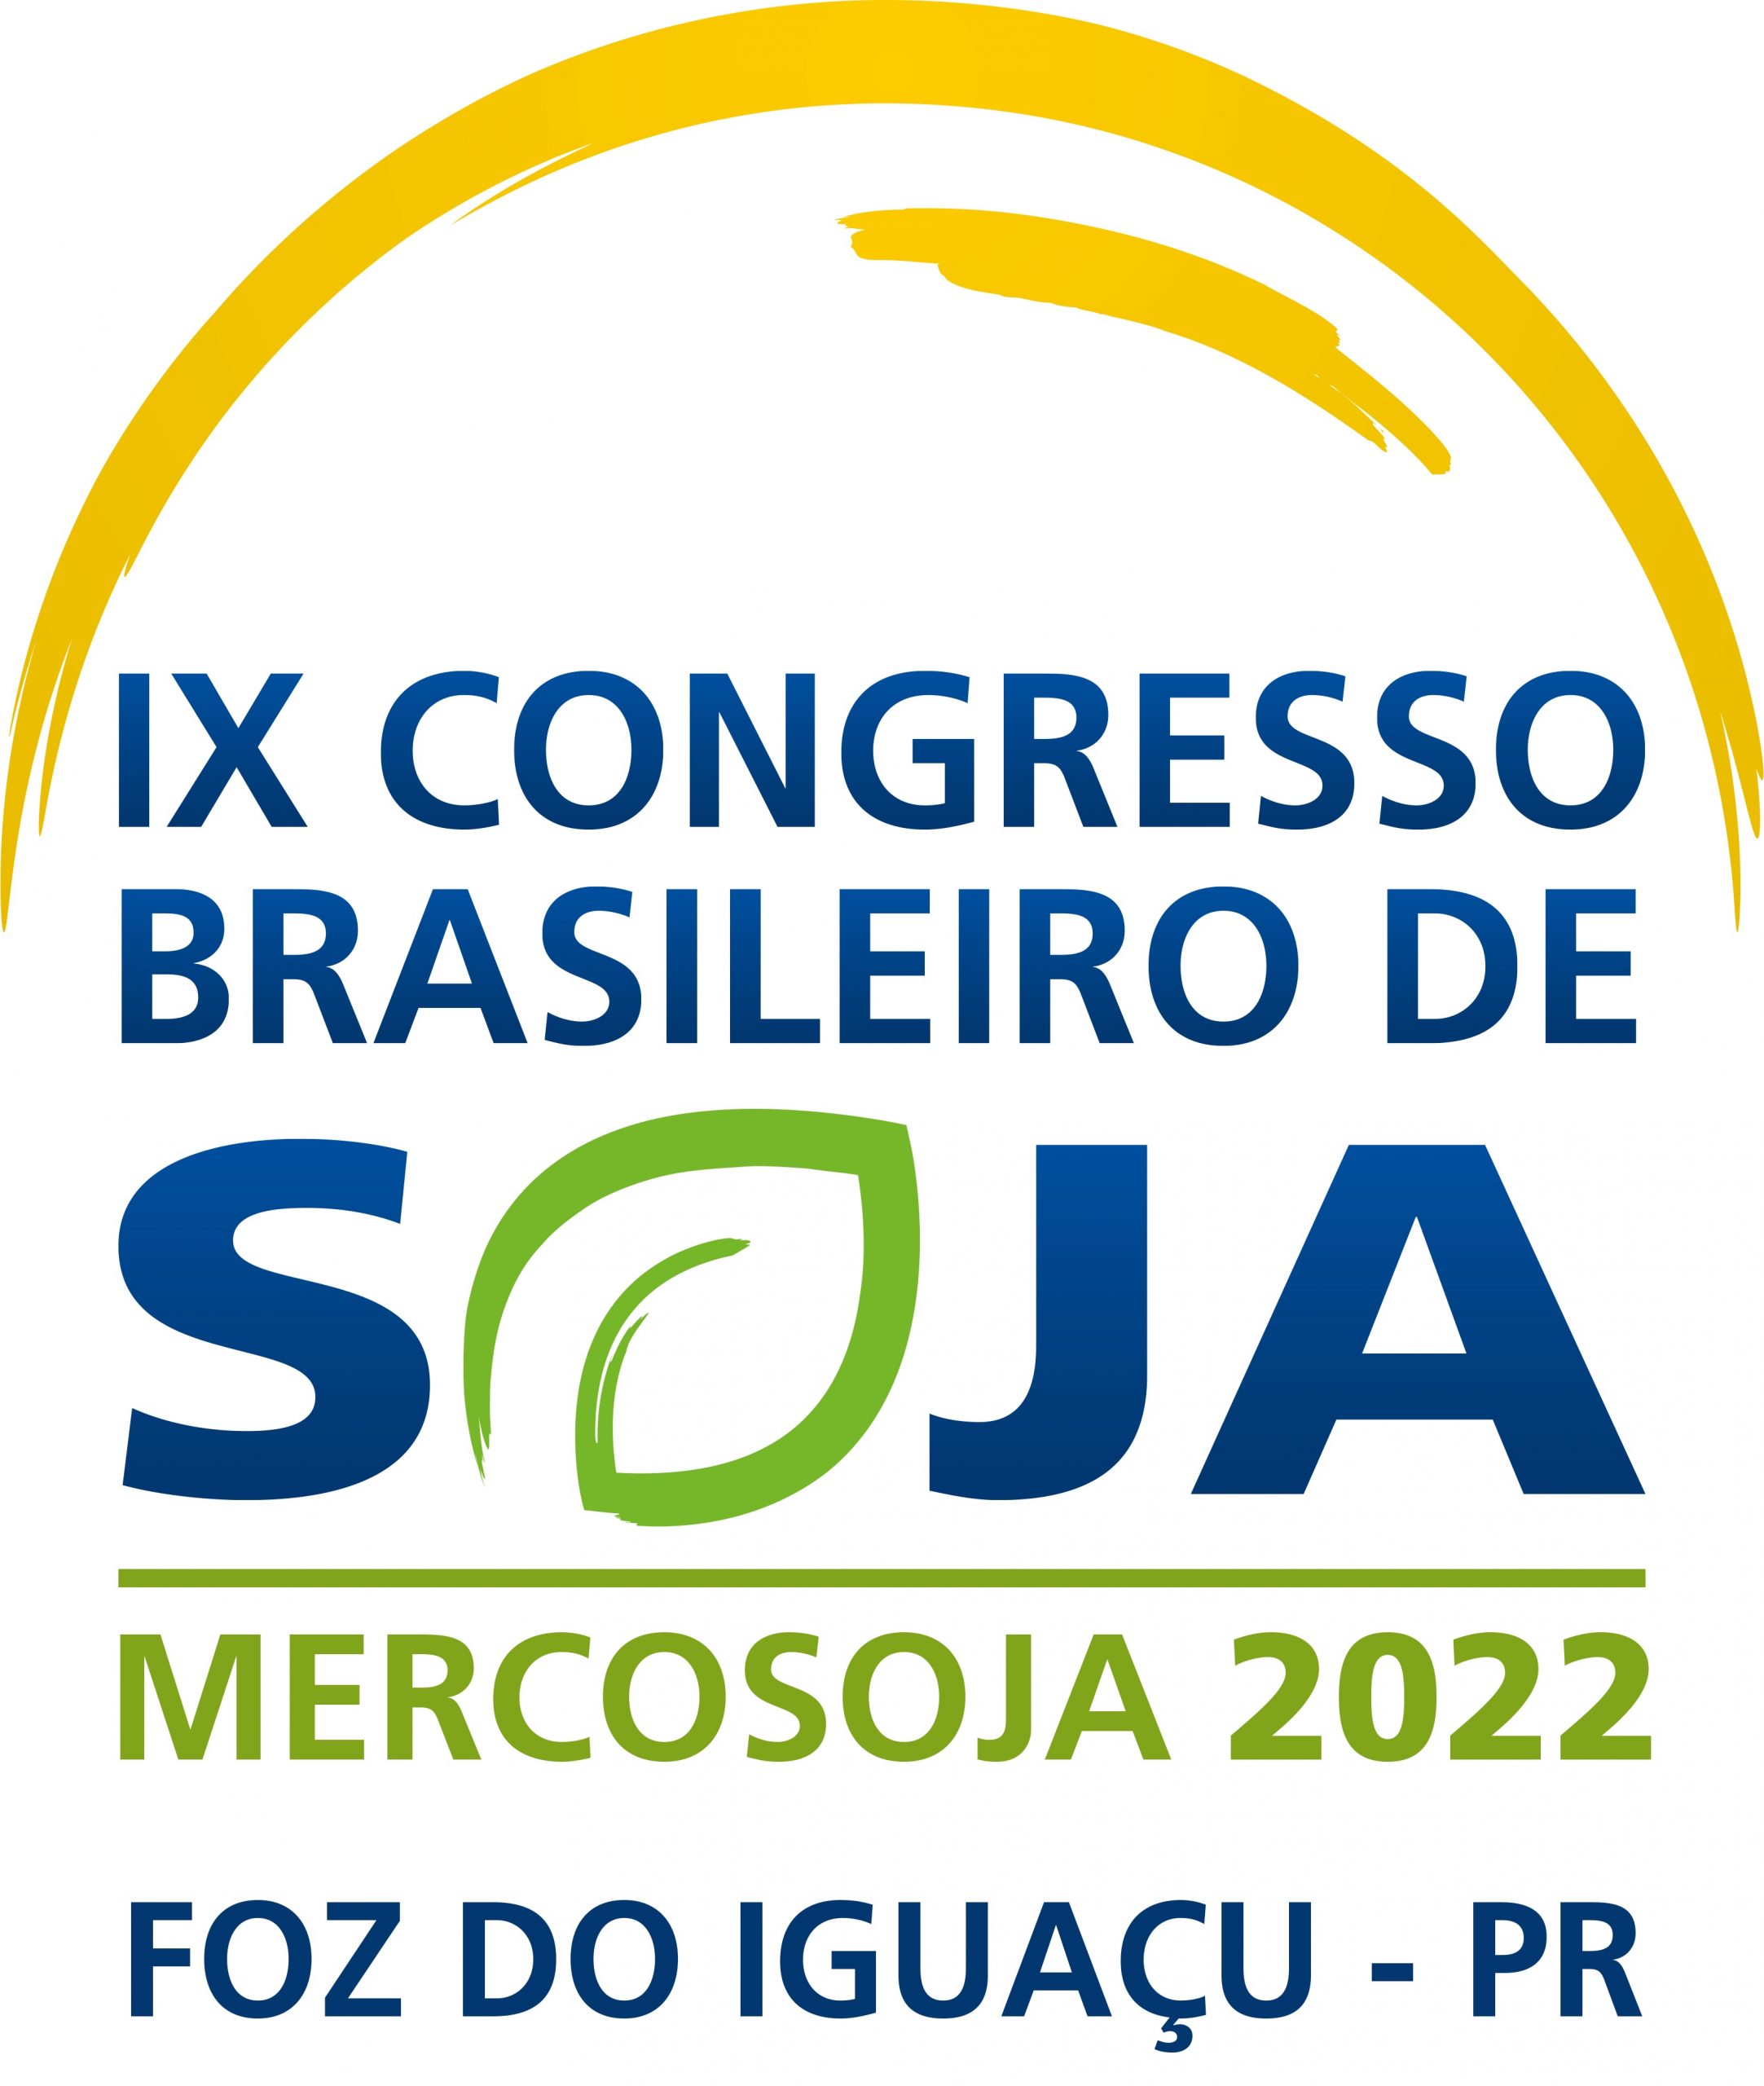 Mercosoja 2022: Los Desafíos para la producción sustentable en el Mercosur